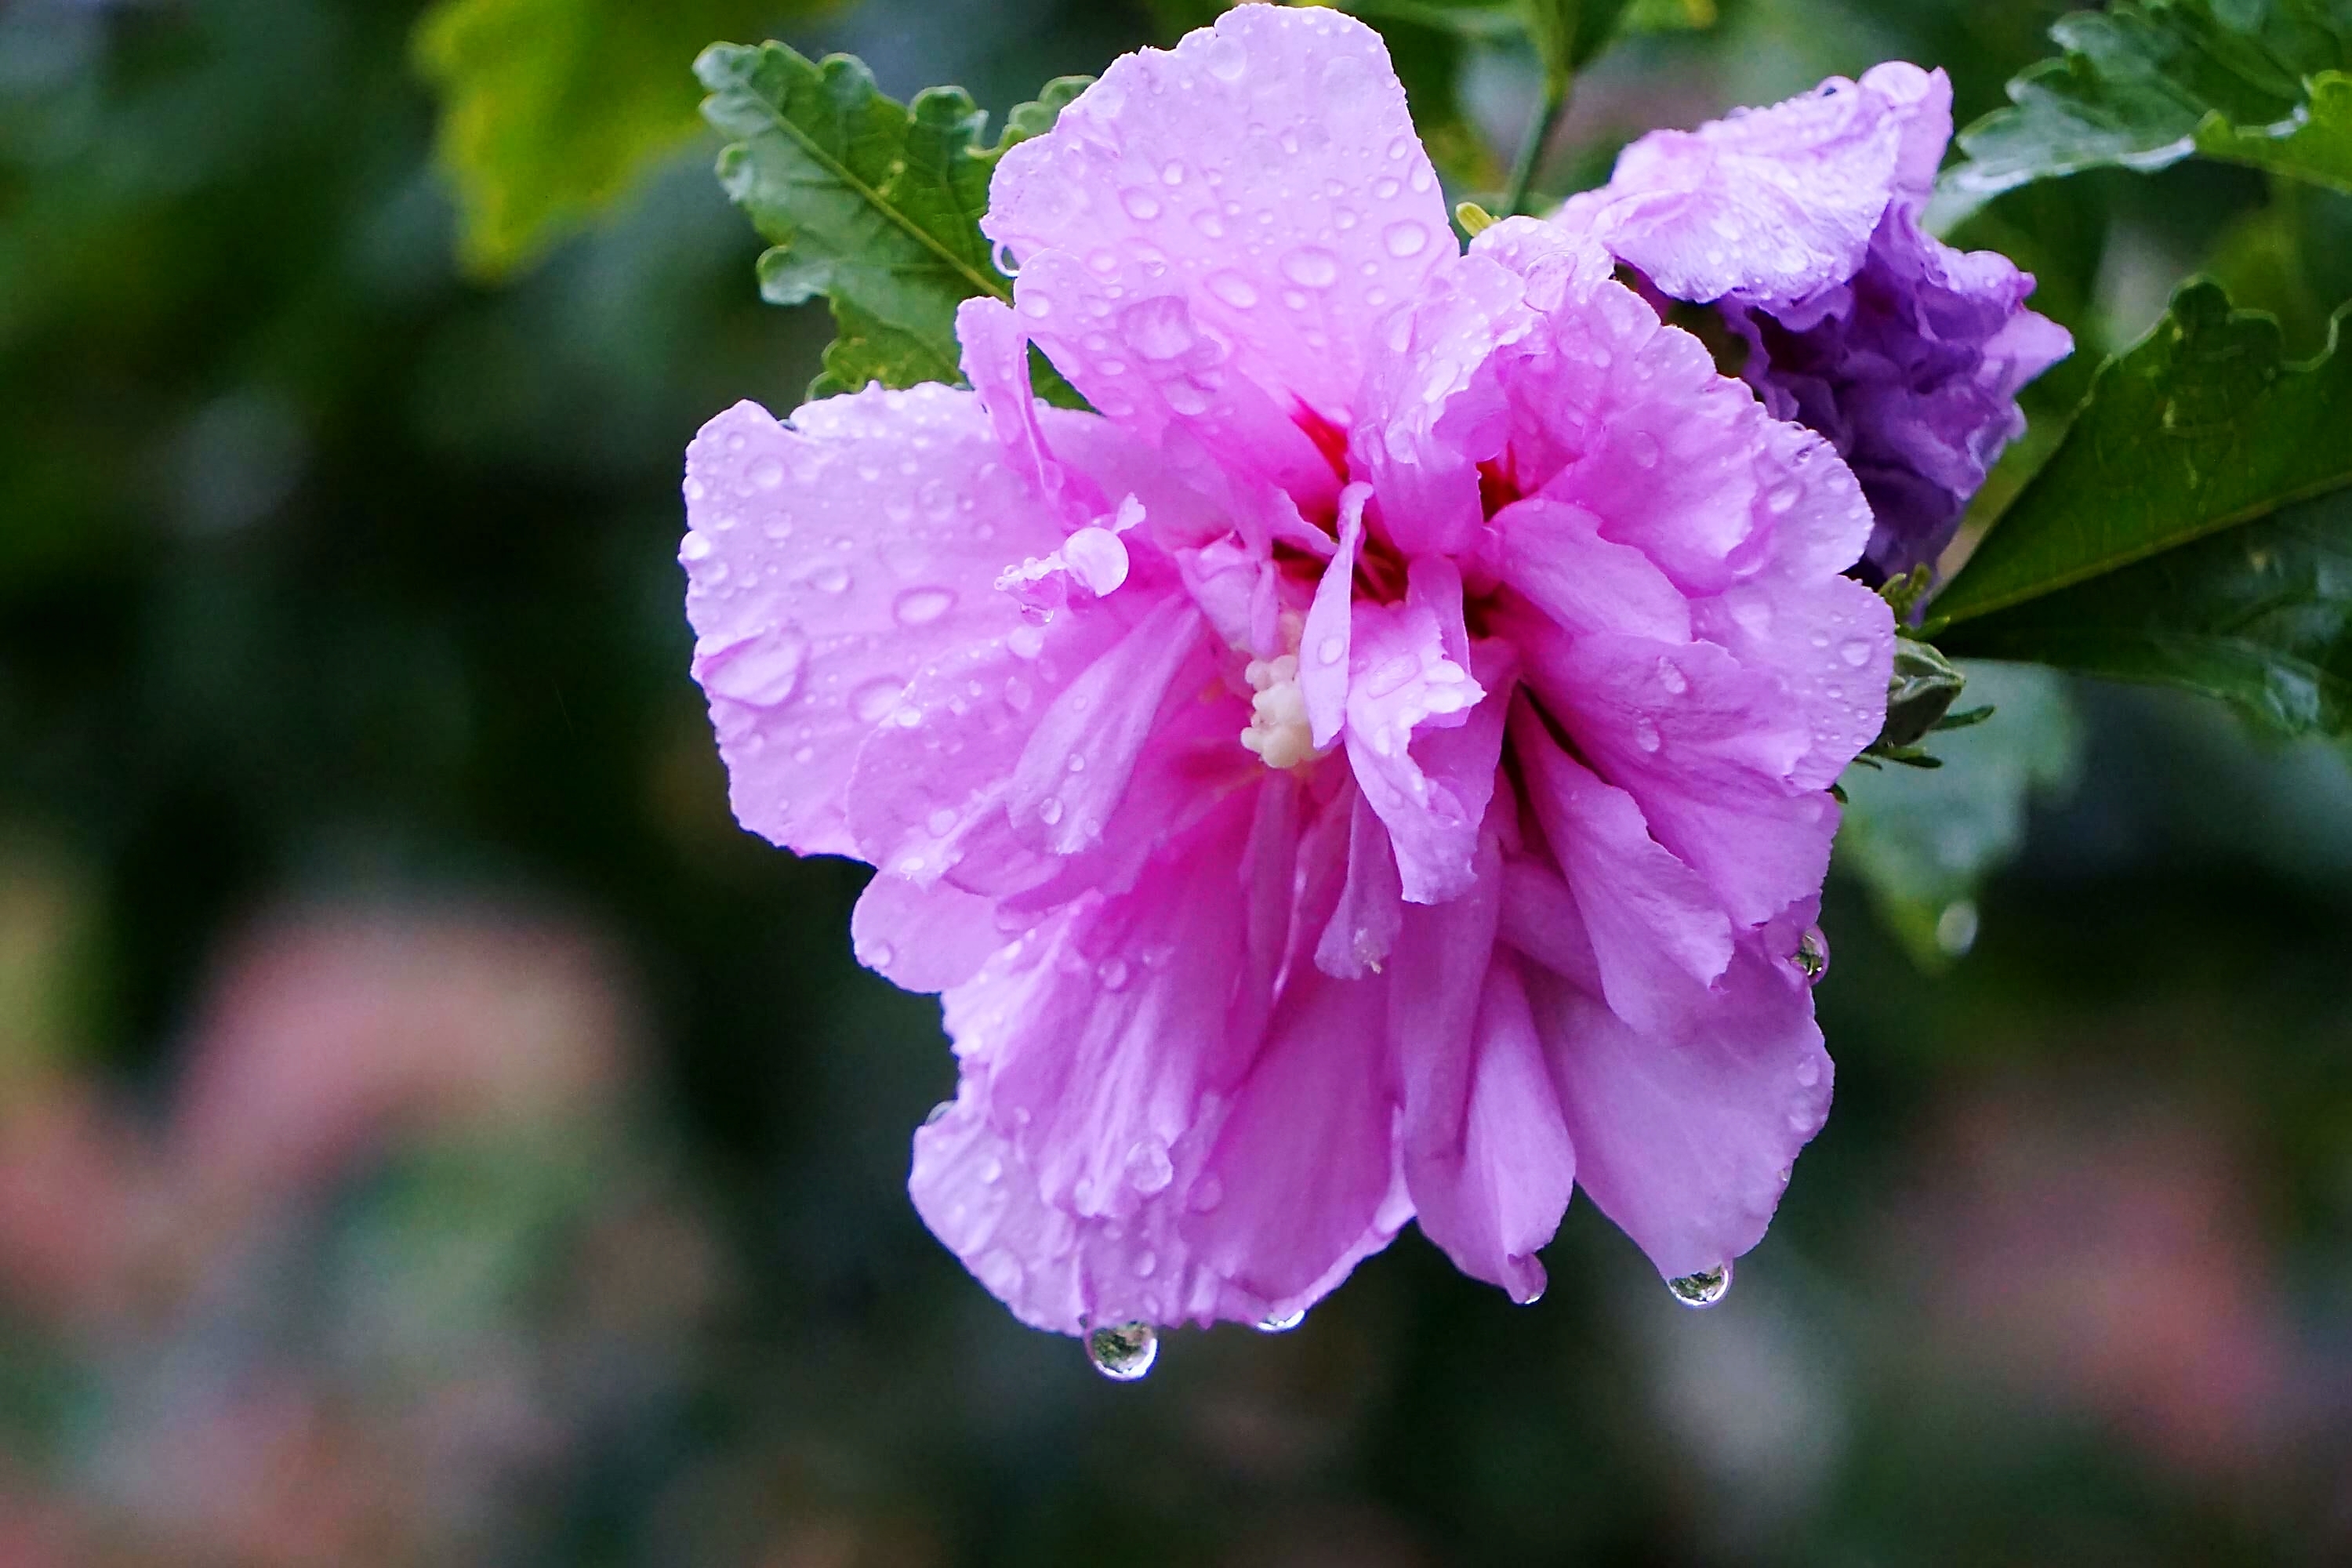 七月,小雨霏霏,和着朦胧细雨,零落的木槿花,任由雨滴葱茏,也掩盖不住